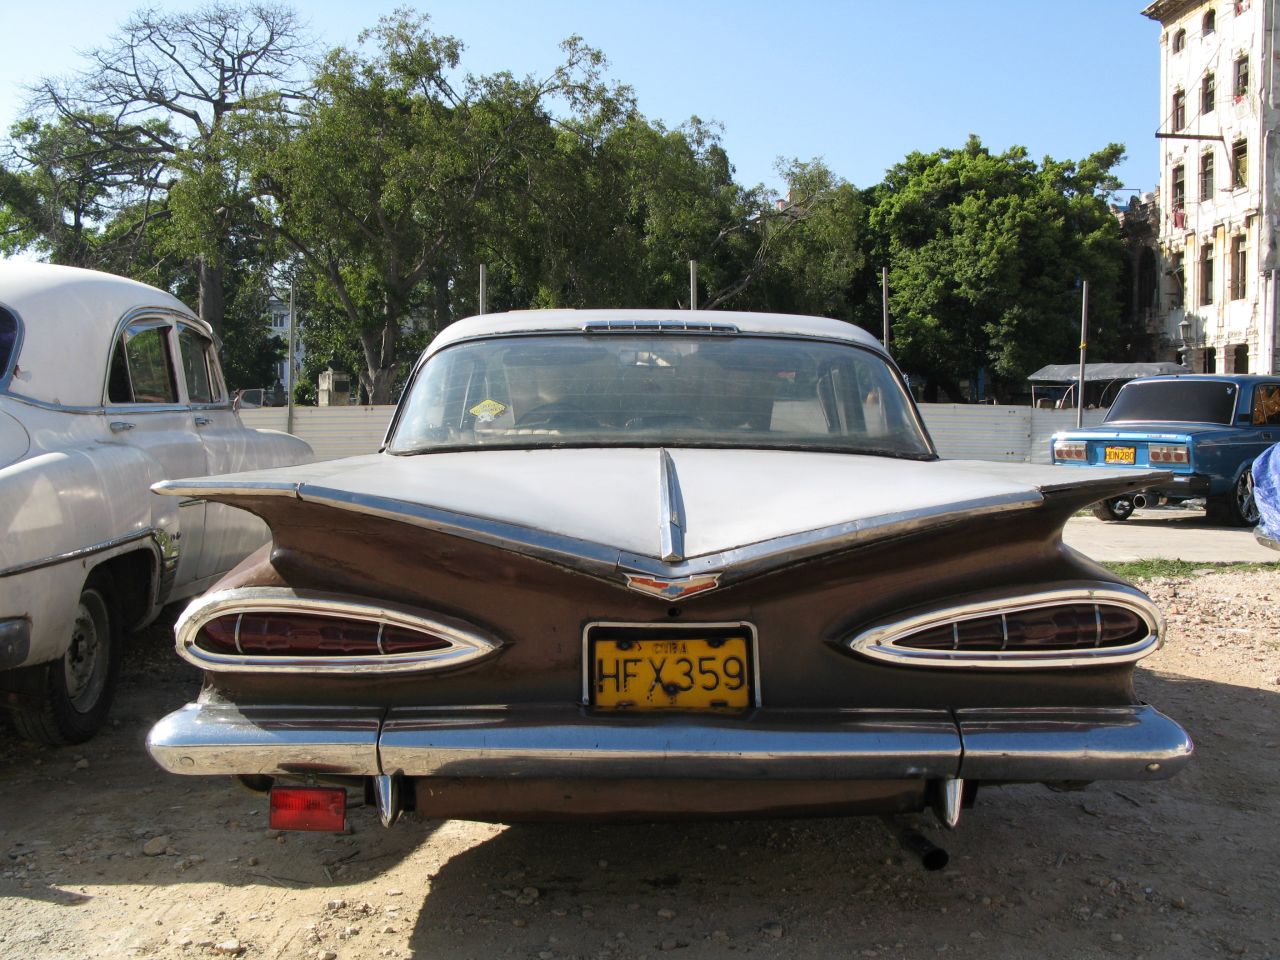 Peter Bale, de CNN, también envió esta foto de un hermoso Chevrolet con aletas de apariencia letal en La Habana, Cuba, cuando estaba de vacaciones en 2008.